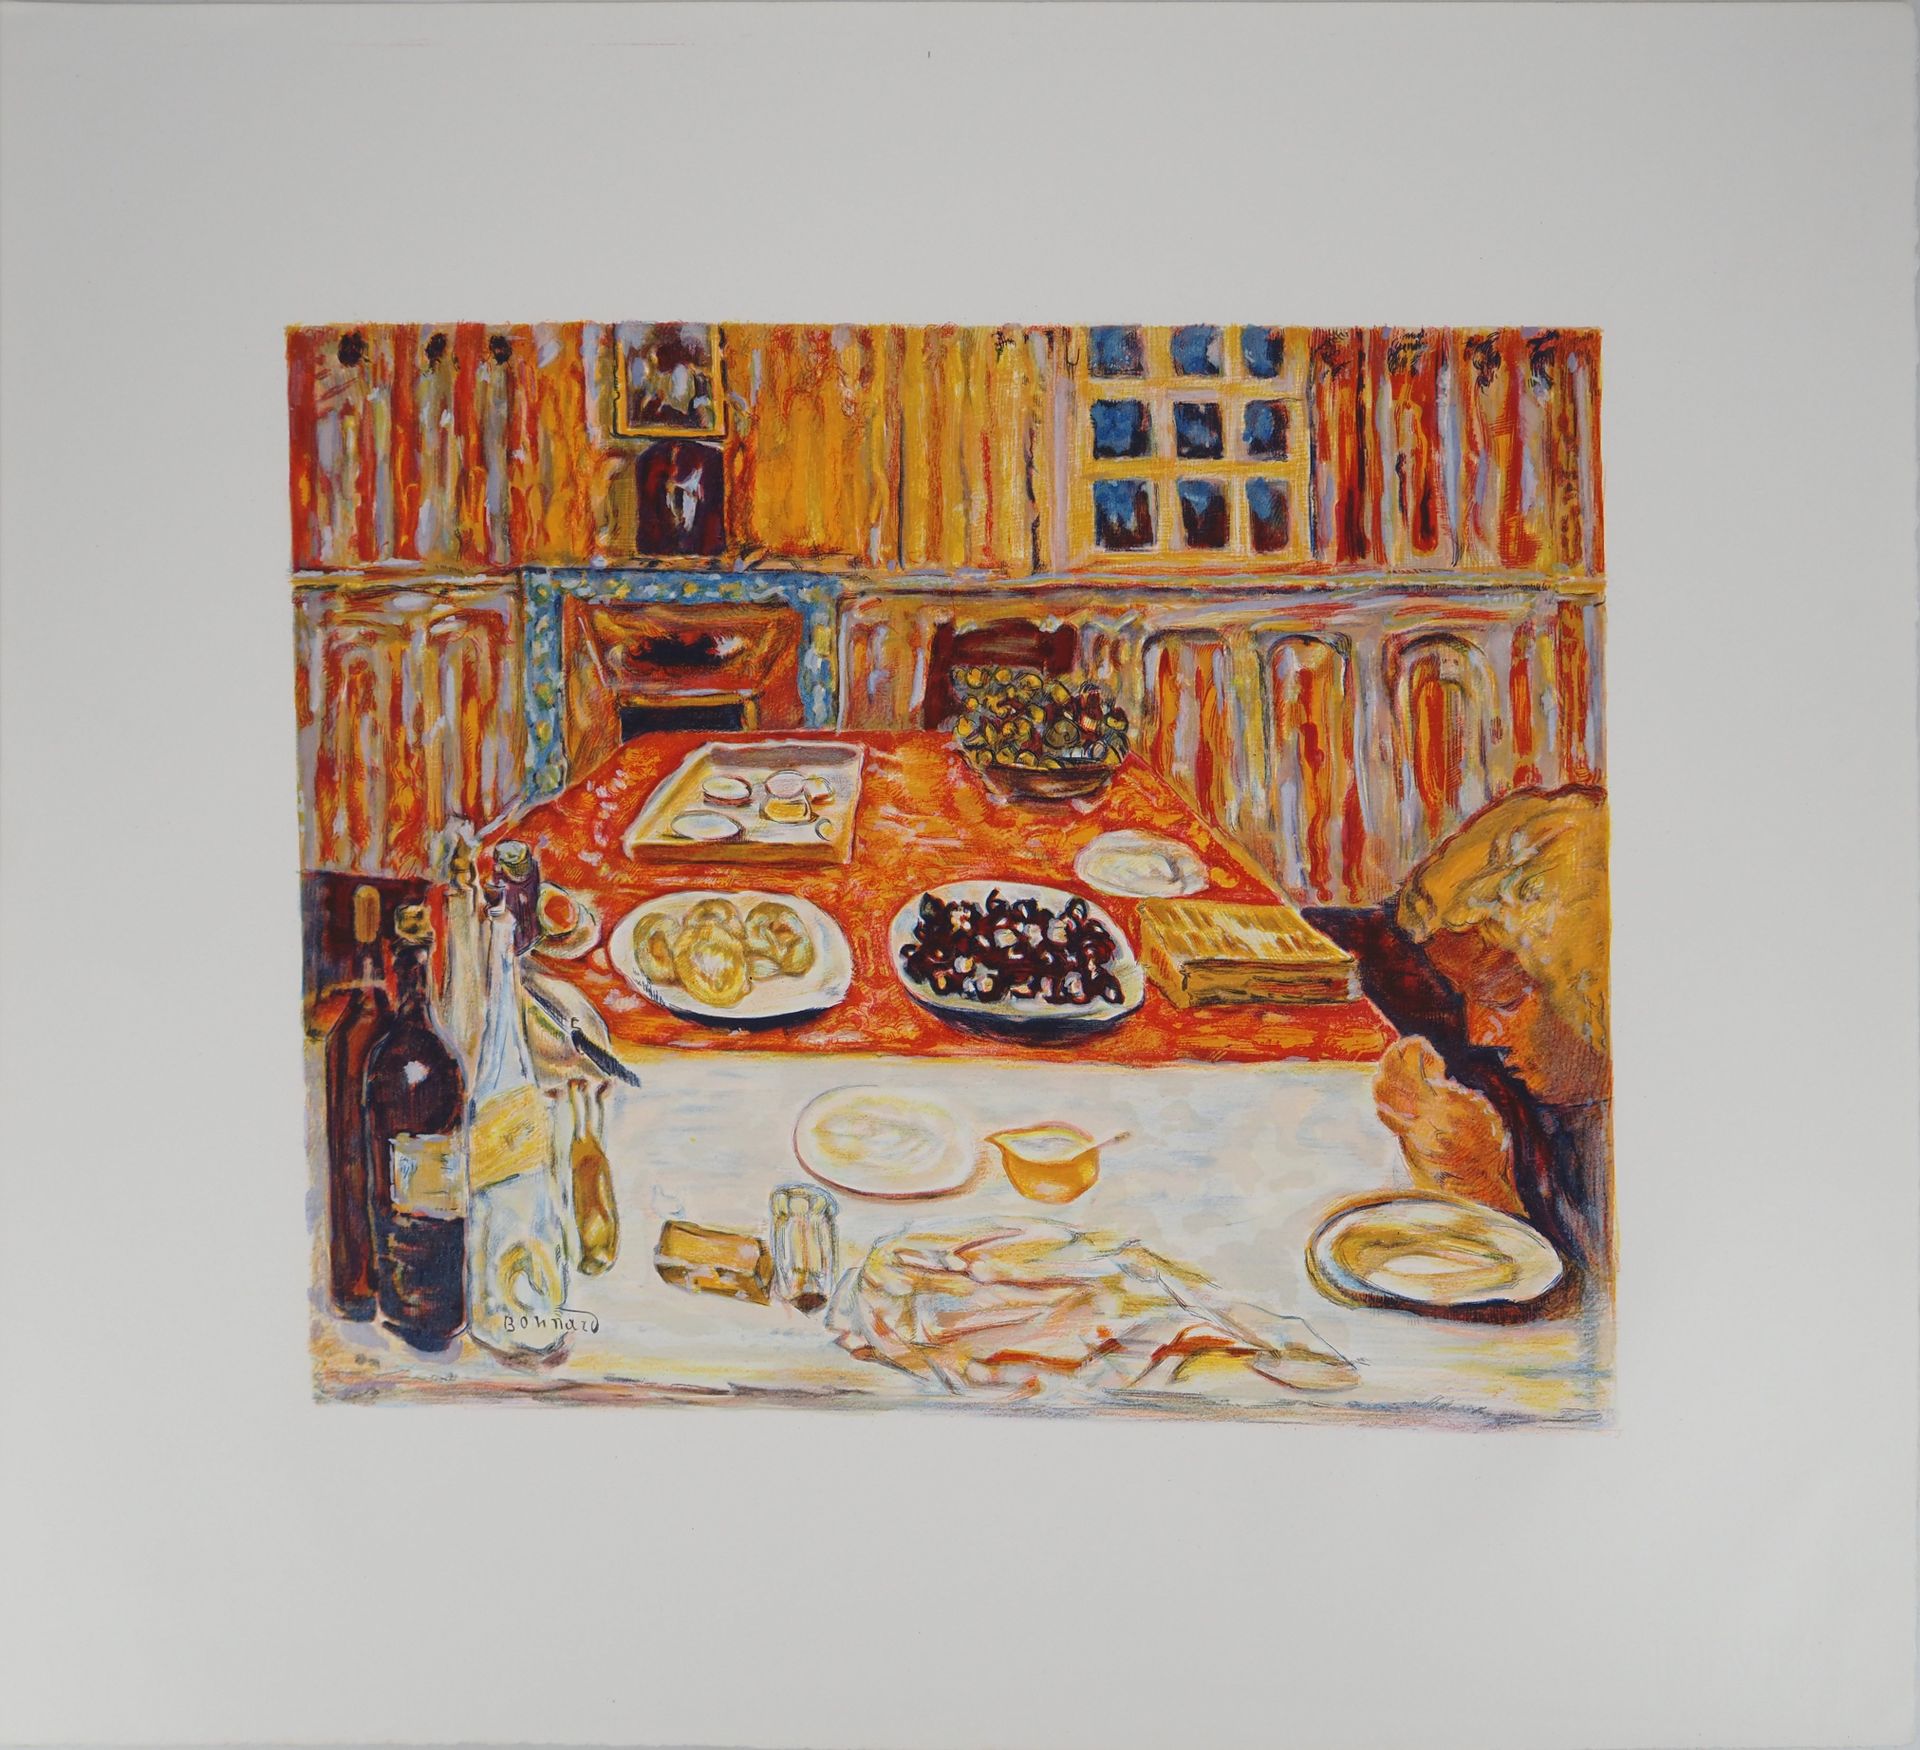 PIERRE BONNARD Pierre Bonnard (1867-1947)

Das Mittagessen in Orange

Farblithog&hellip;